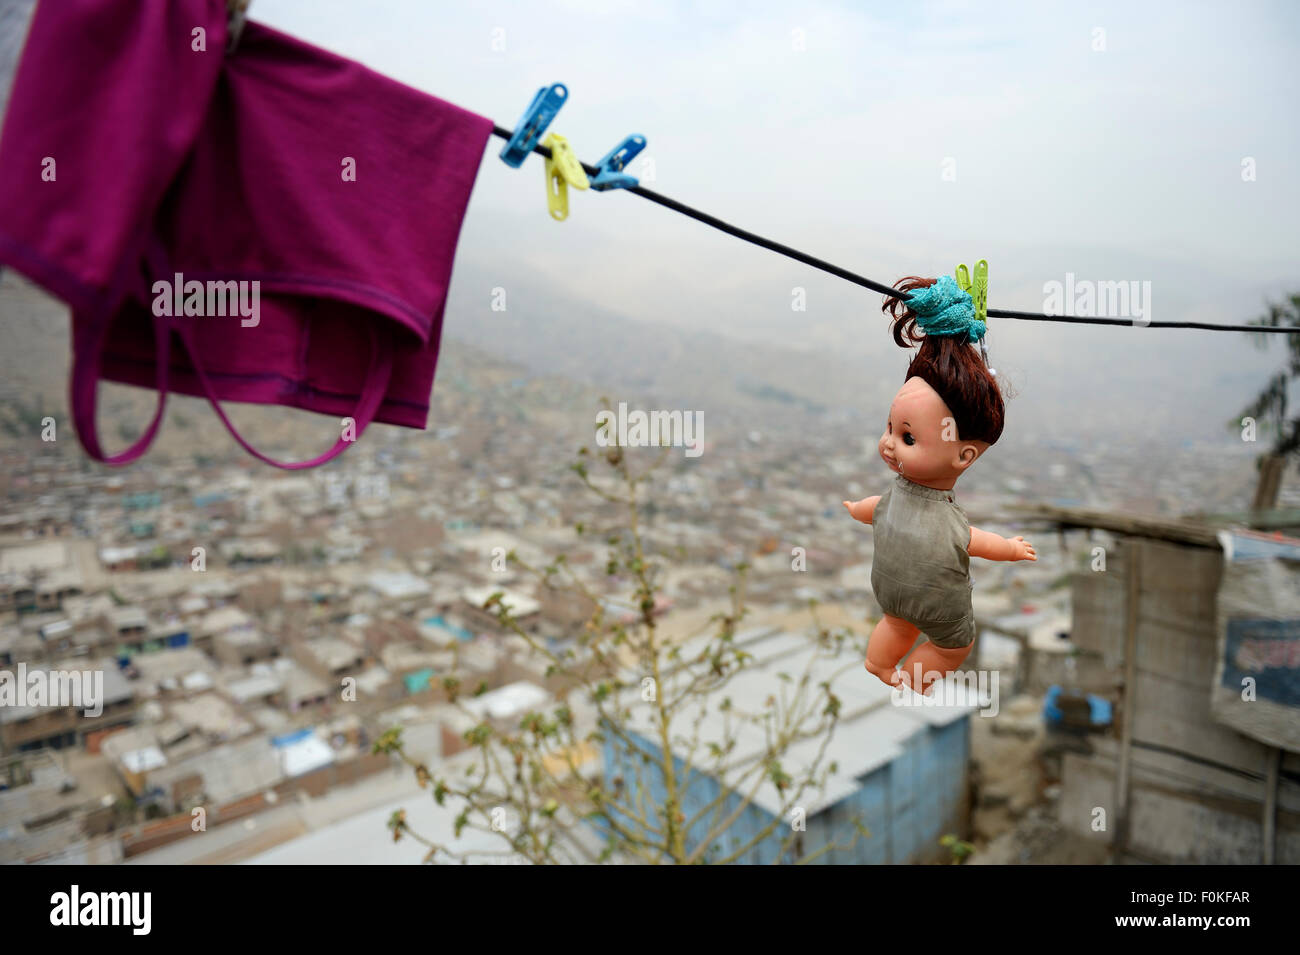 Peru, Lima, Huaycan, Puppe Wäscheleine hängen Stockfoto